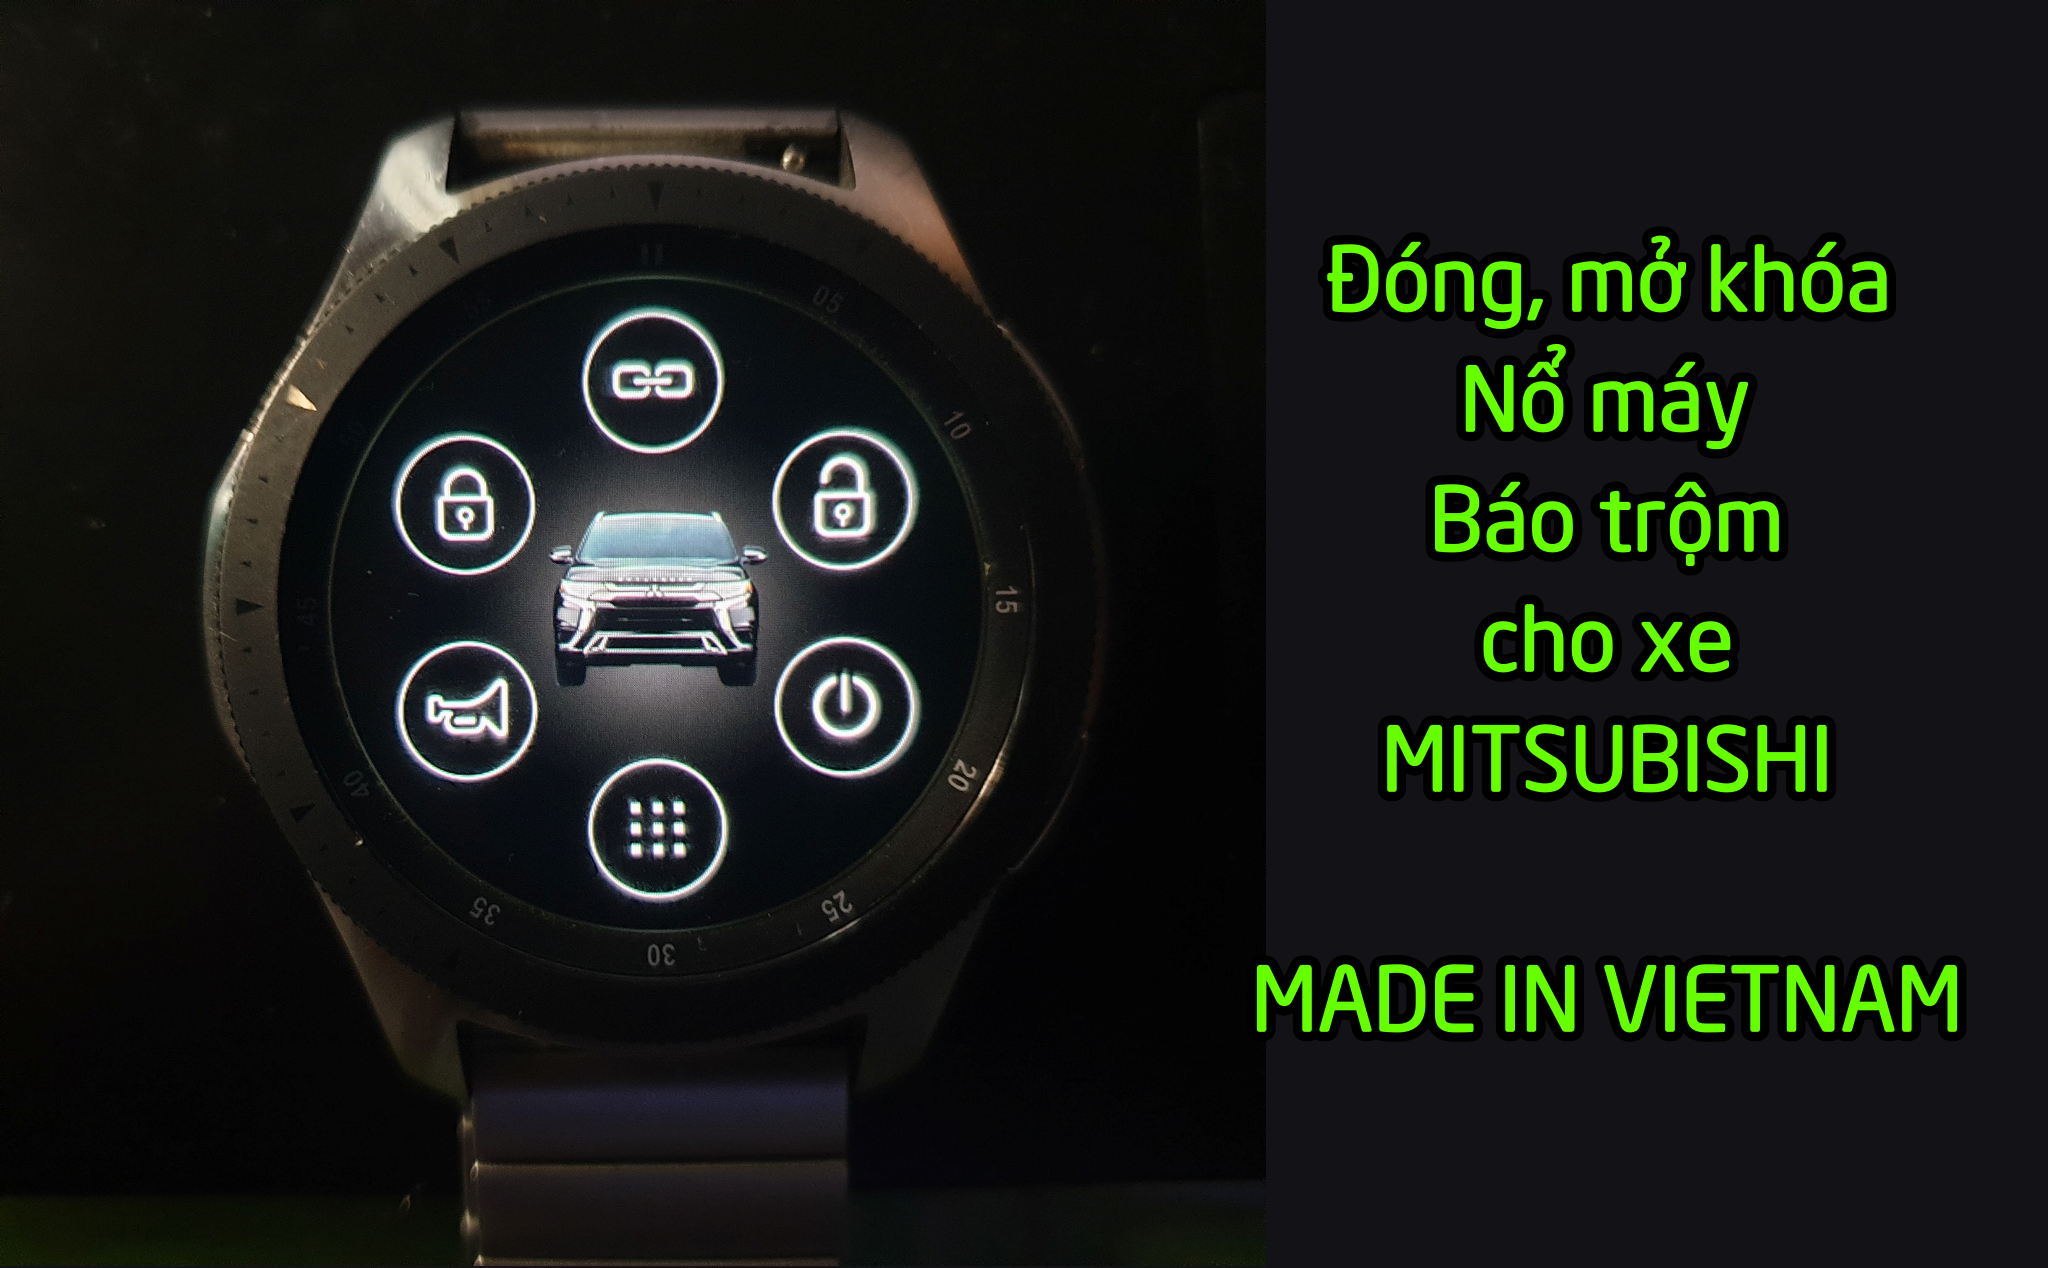 Thiết bị giúp "độ" thêm khả năng cho các dòng xe Mitsubishi, hoạt động qua smartwatch, made in VN